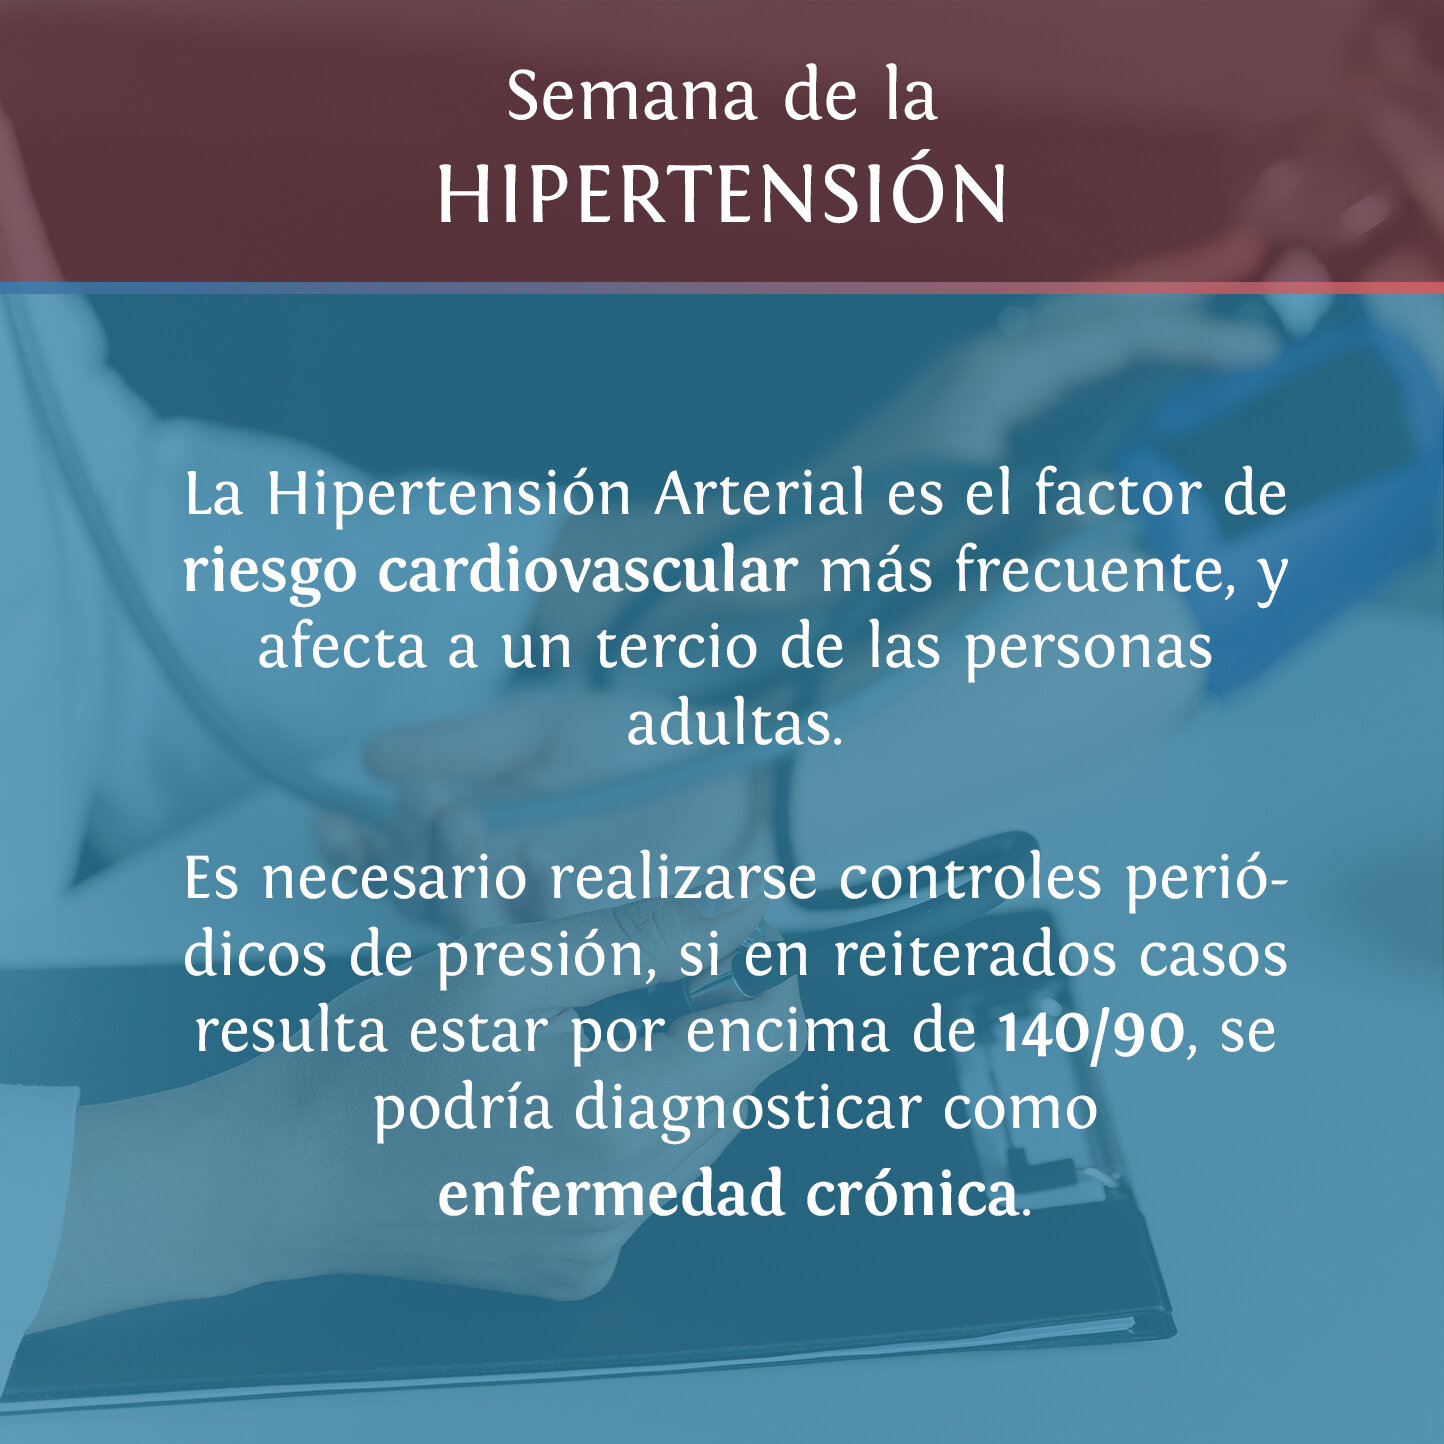 placa Hipertension3.jpg